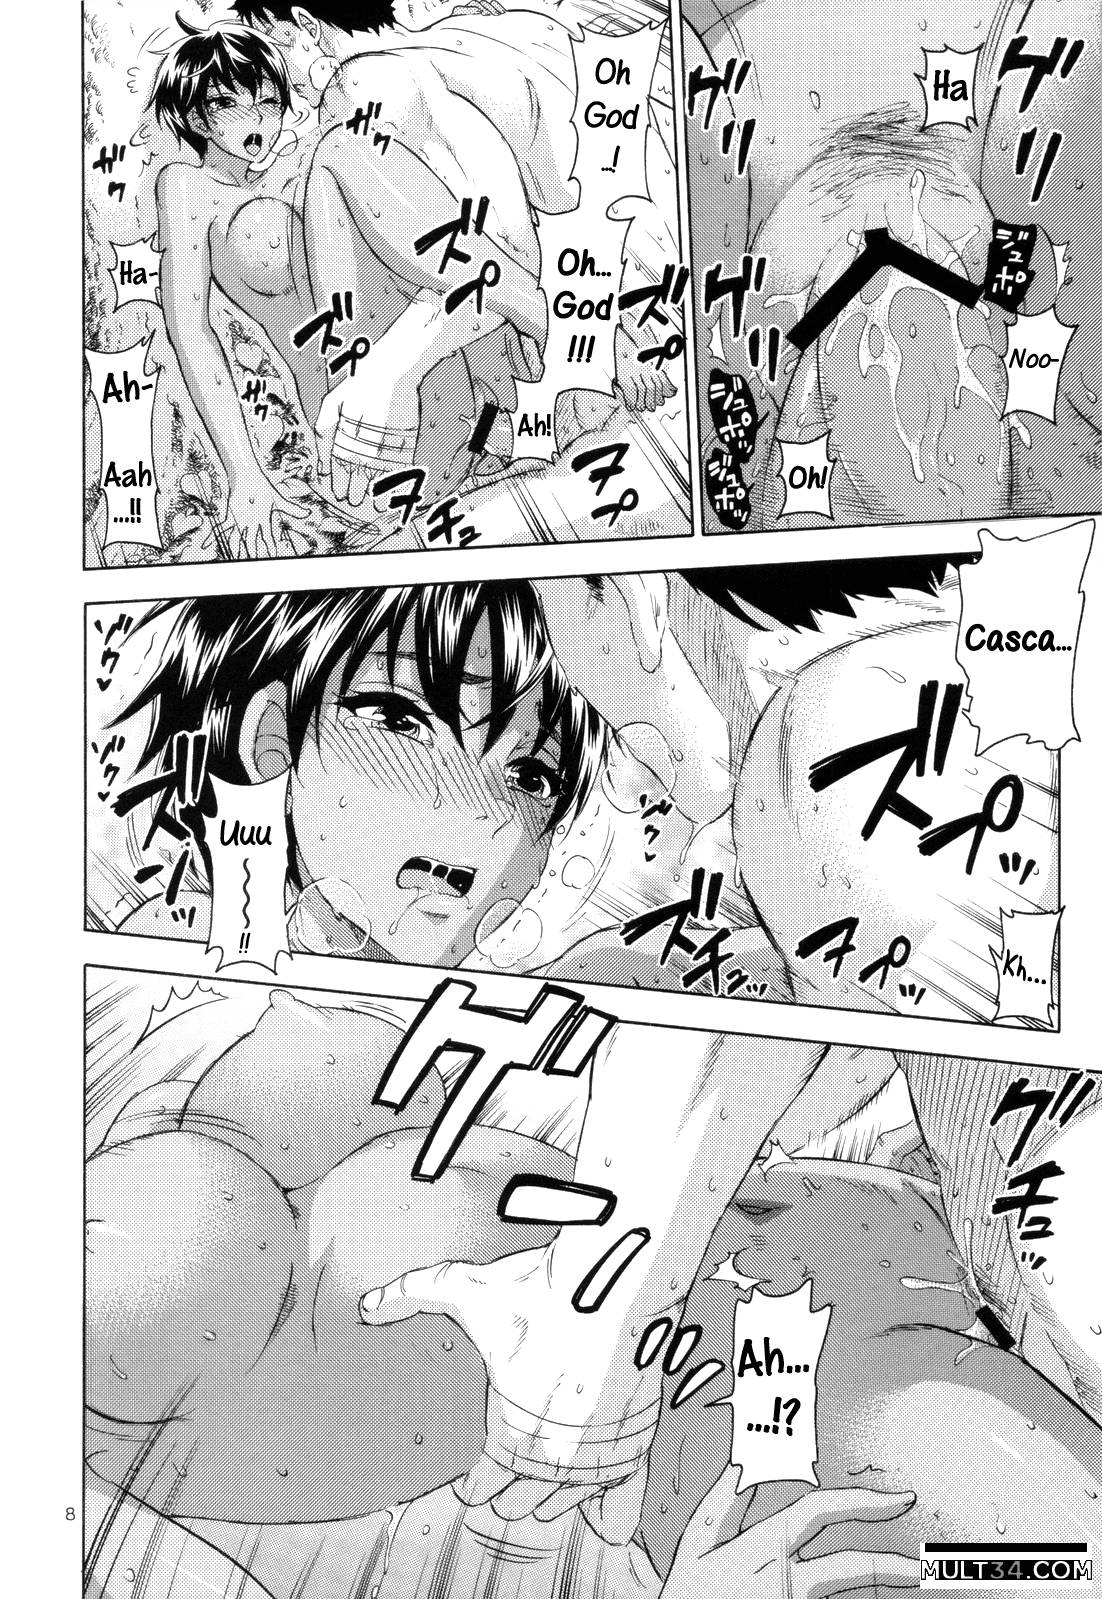 Akatsuki wo Matte 2 page 8